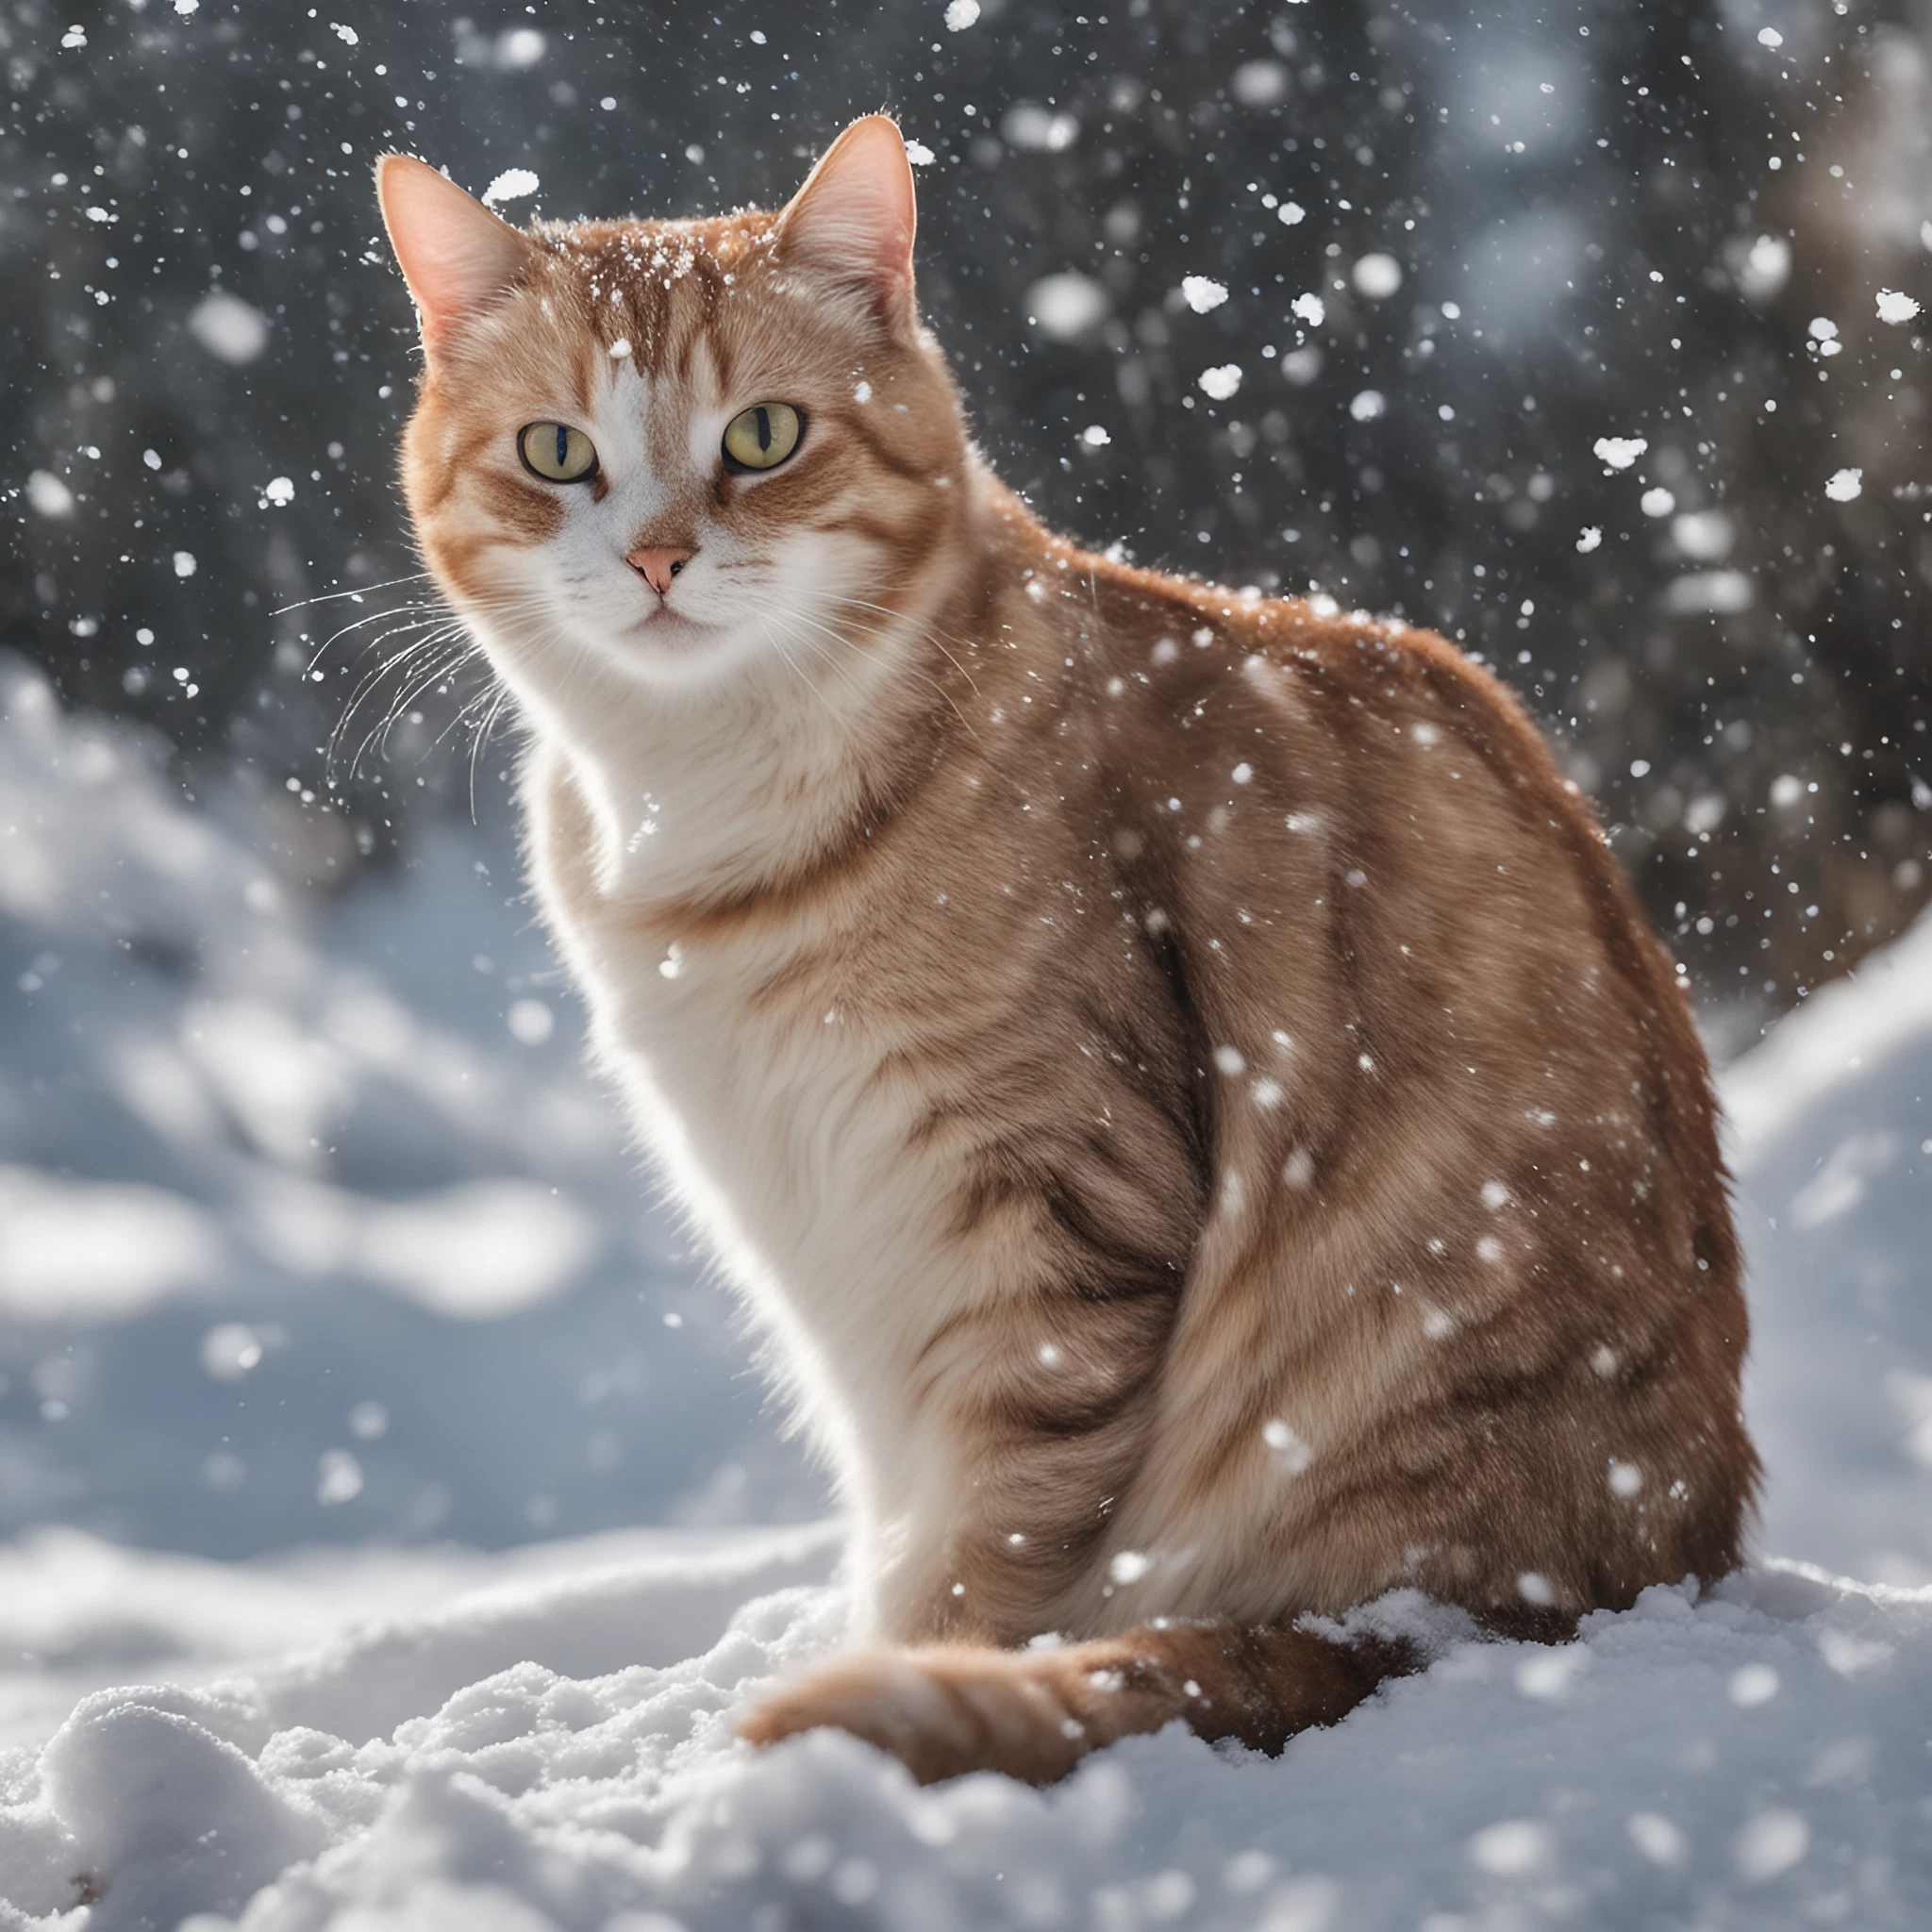 吹雪と雪の中佇むかわいい三毛猫のリアル写真風フリーイラスト